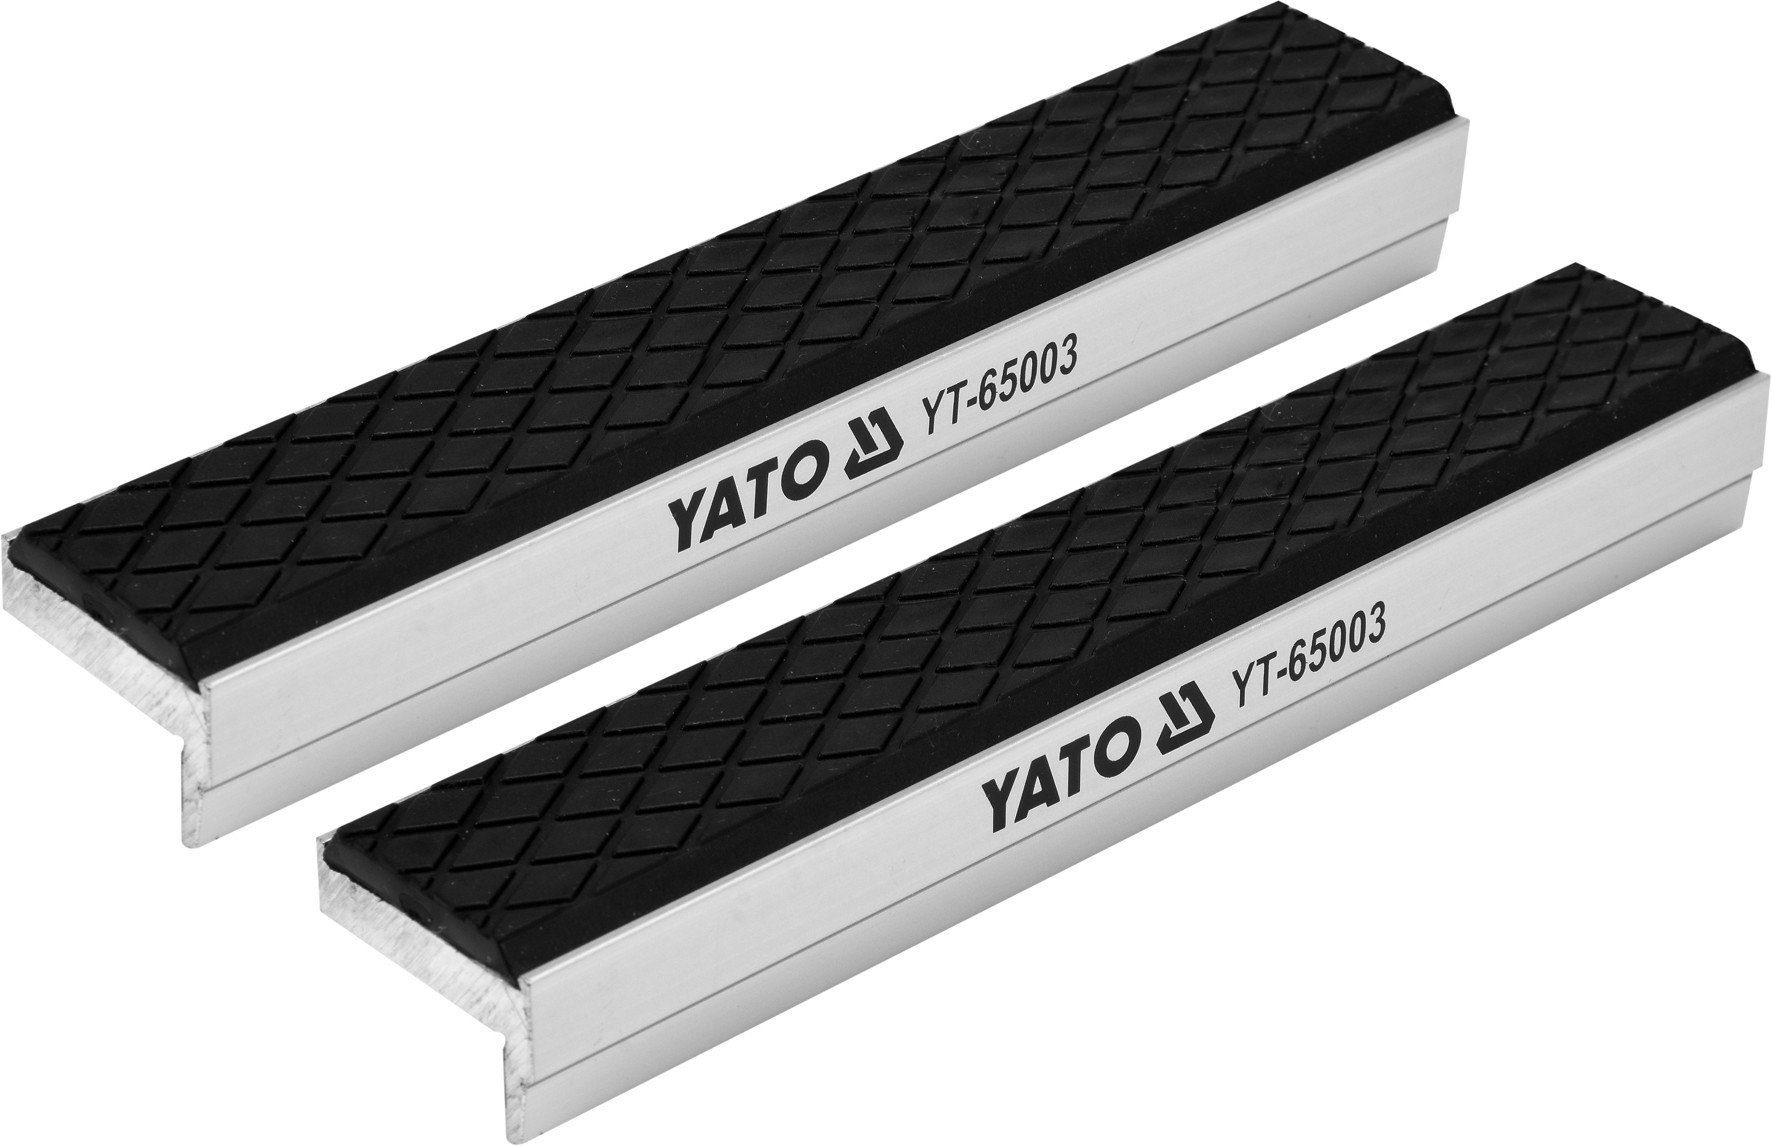 Yato Schraubstock Schonbacken Schutzbacken 150 mm aus Aluminium, magnetisch, soft